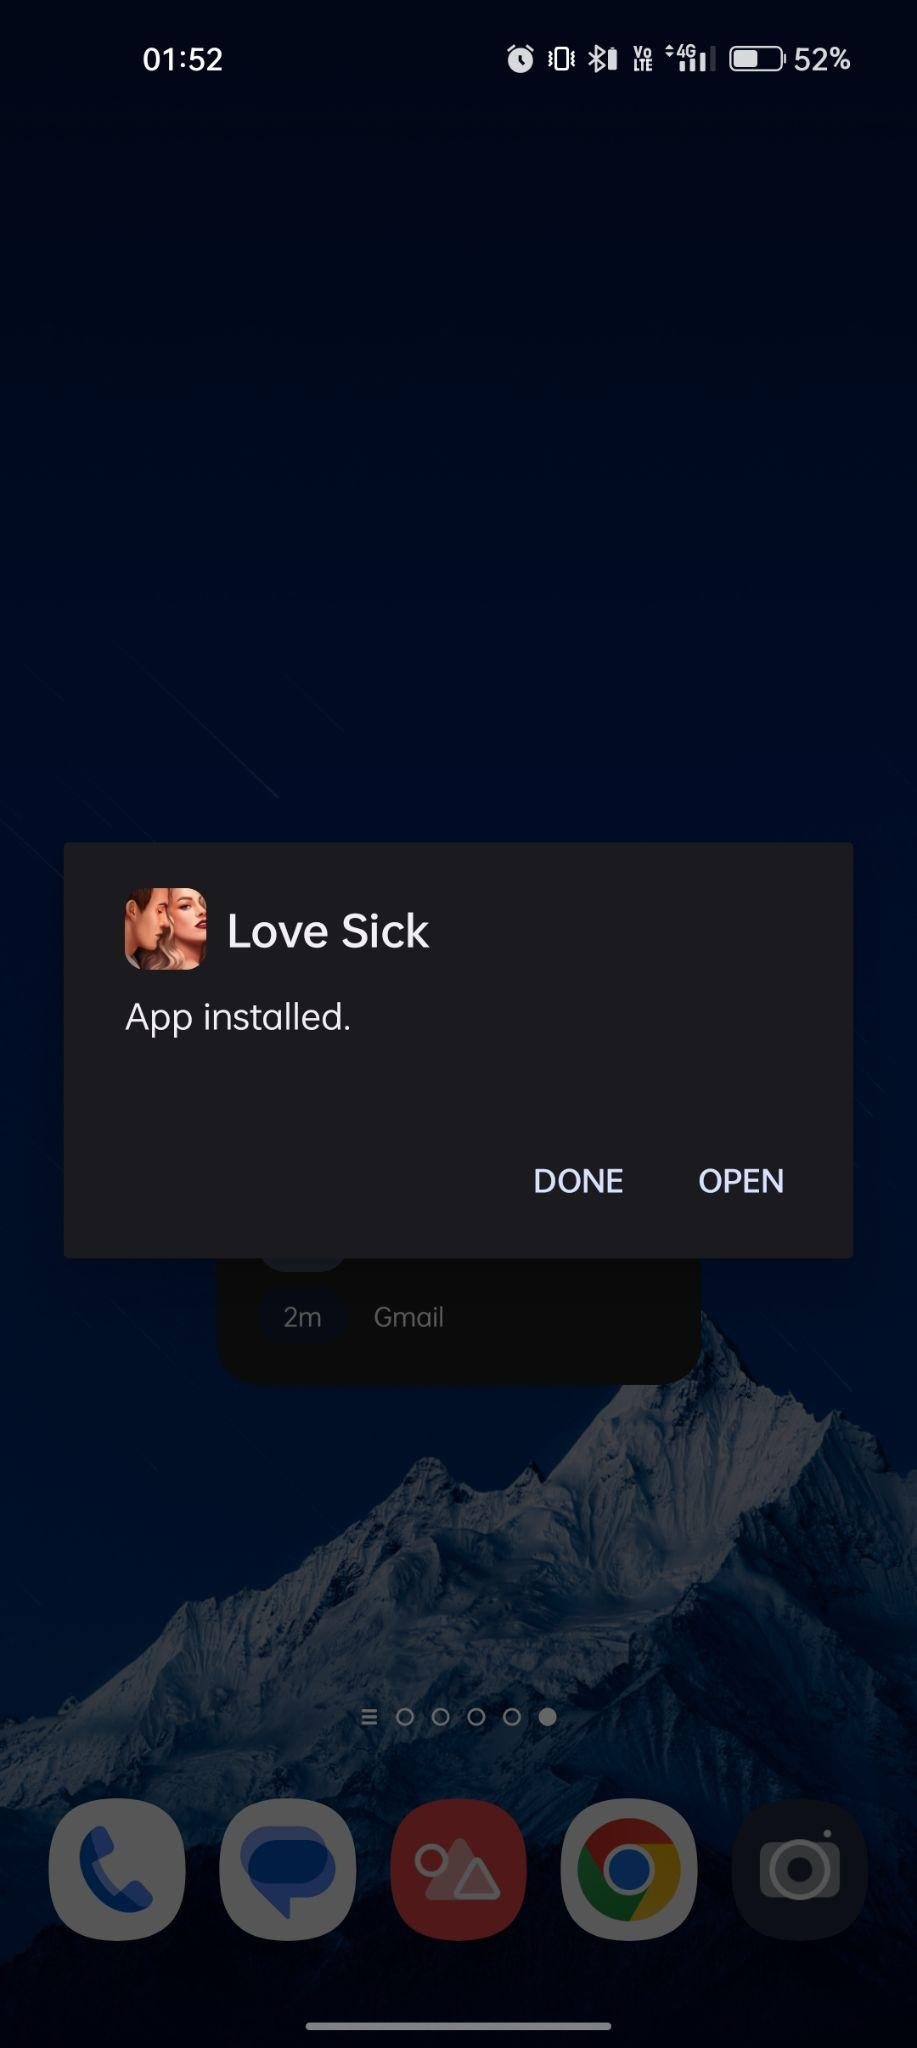 Love Sick apk installed